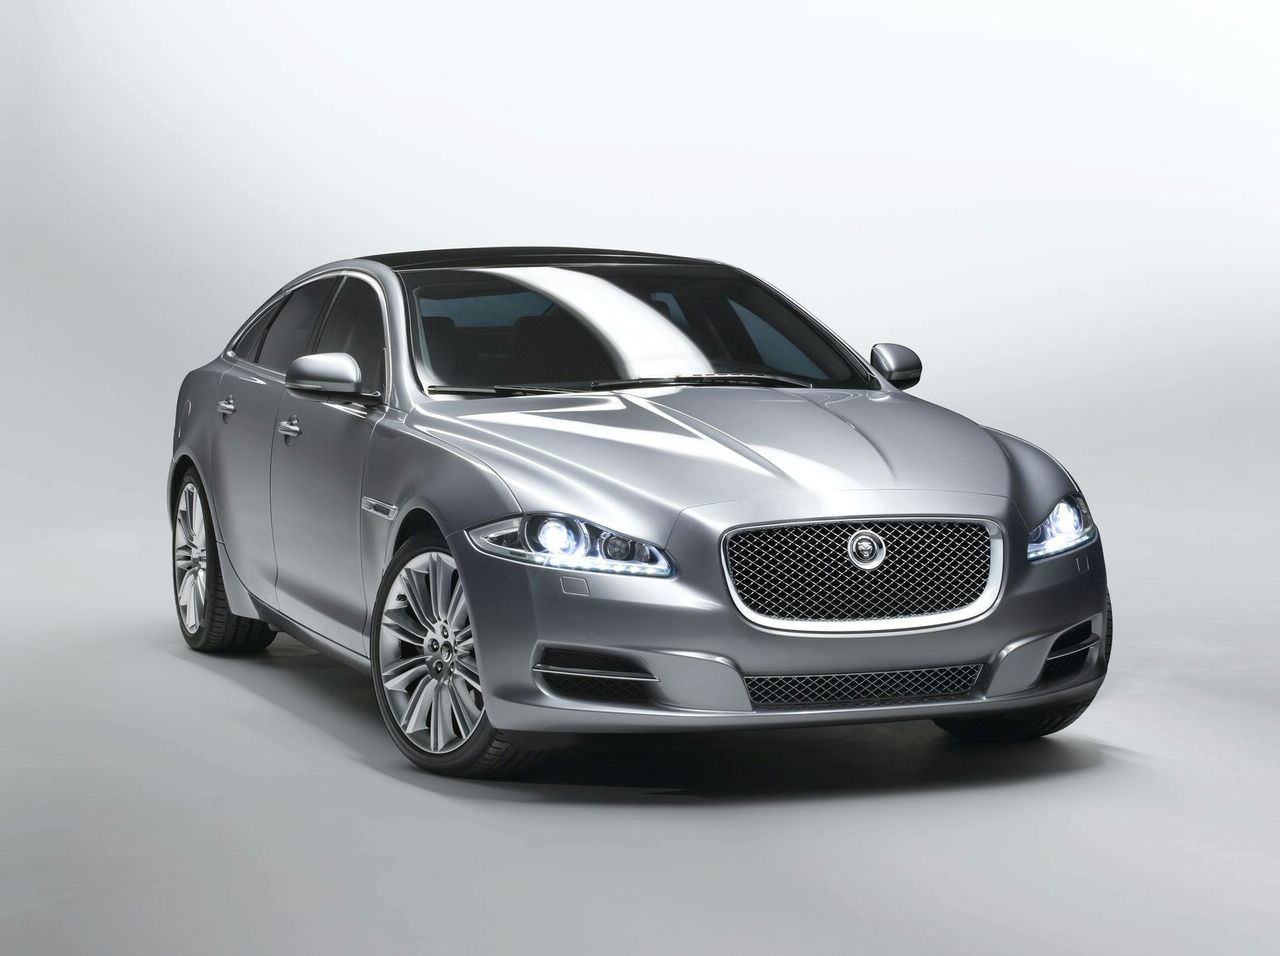 Jaguar planea dos nuevos estilos para su próximo XJ